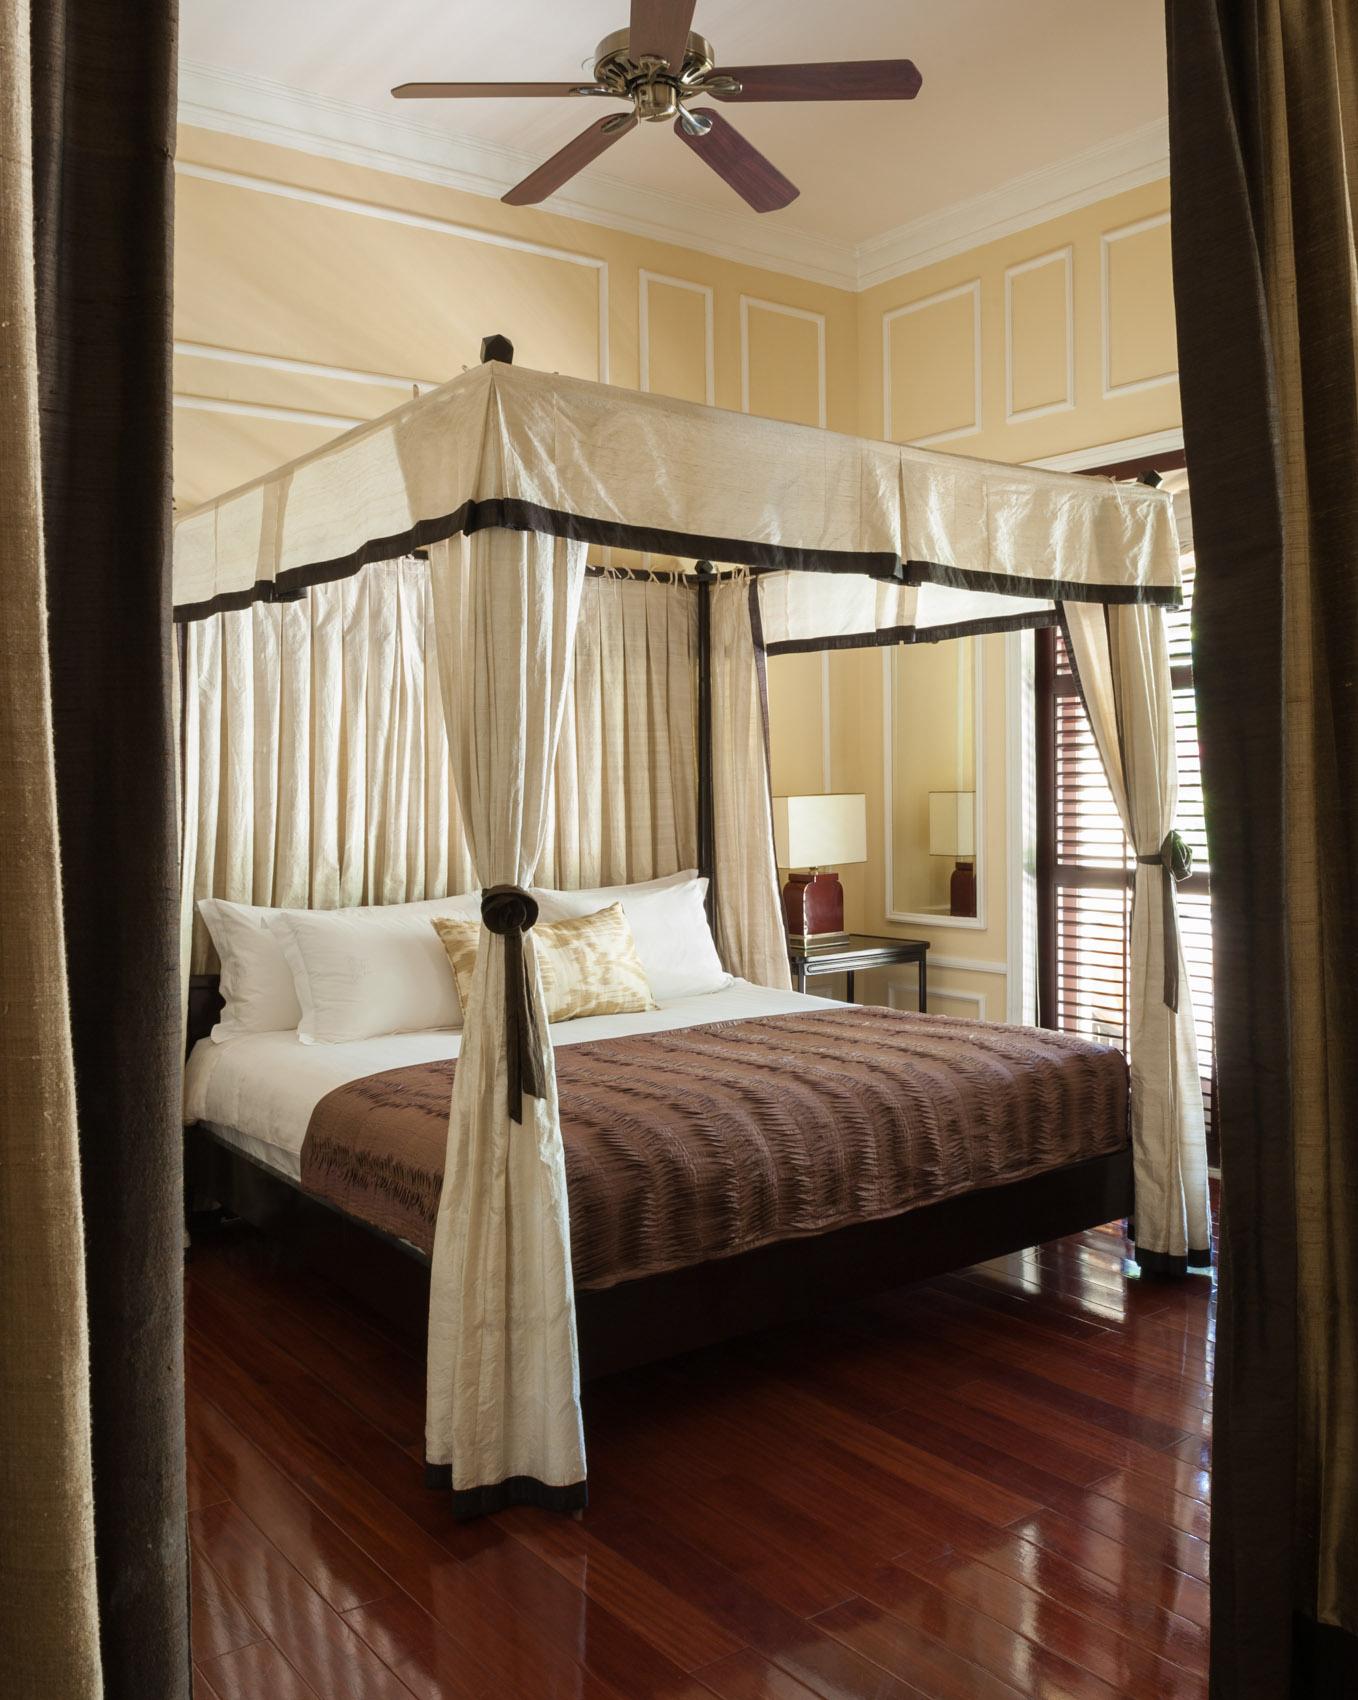 130805-66 Bedroom in suite at Raffles, Siem Reap